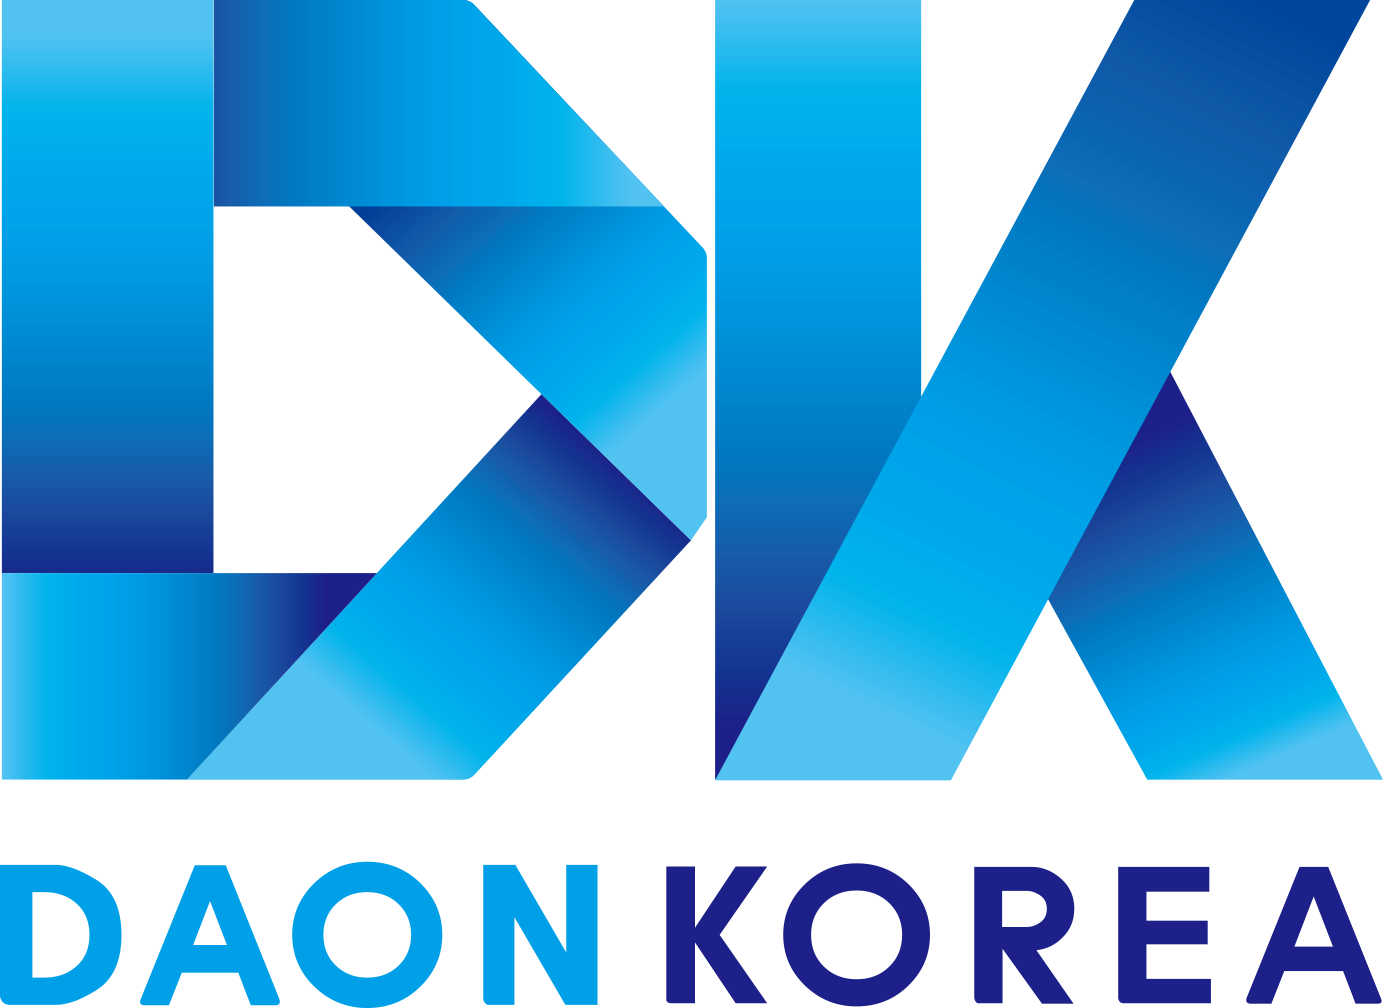 Daon Korea